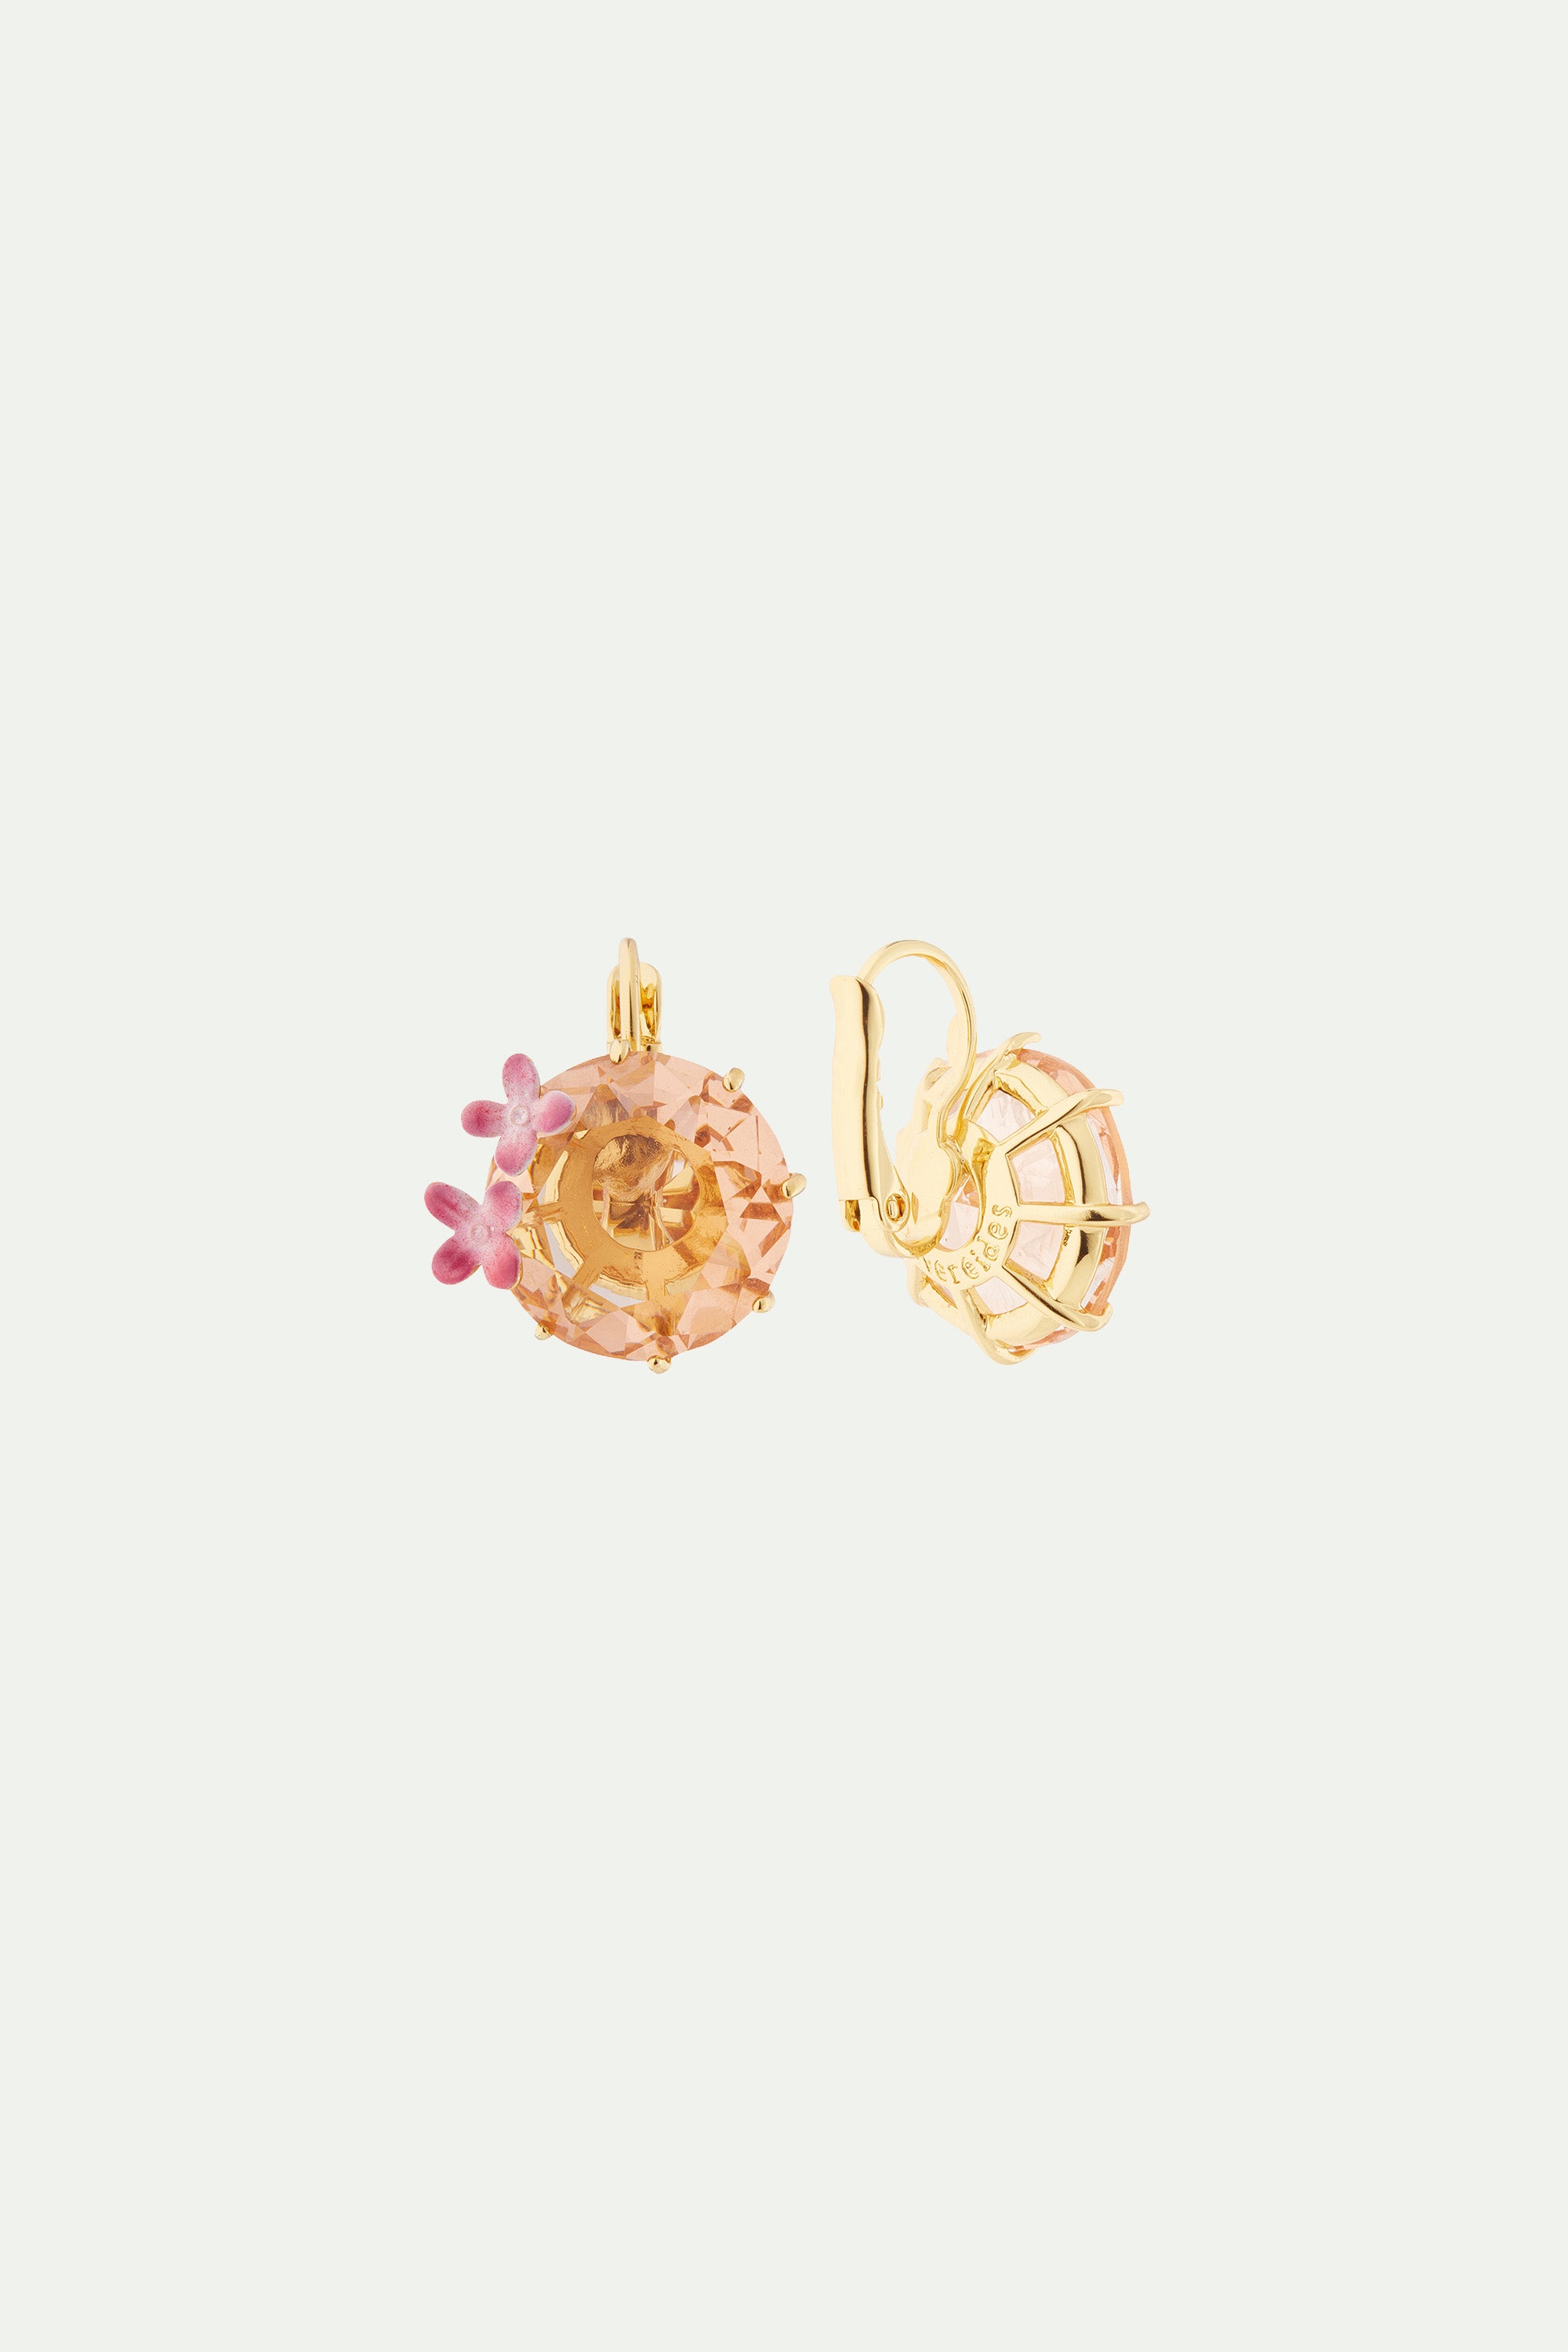 Boucles d'oreilles dormeuses fleurs et pierre ronde la diamantine rose abricot